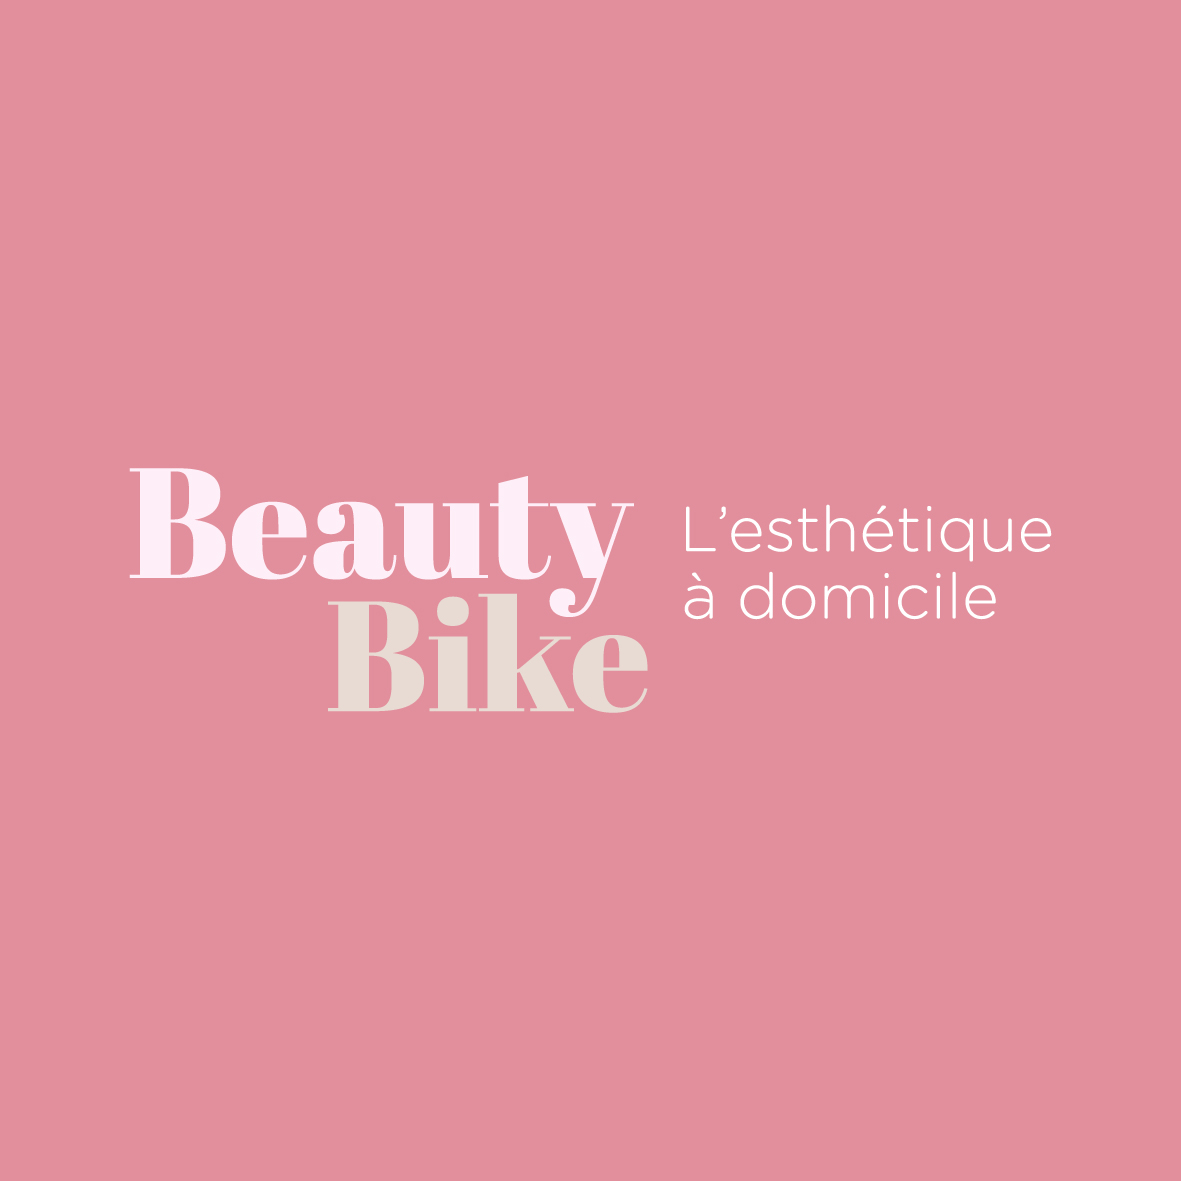 Alice, Beauty Bike